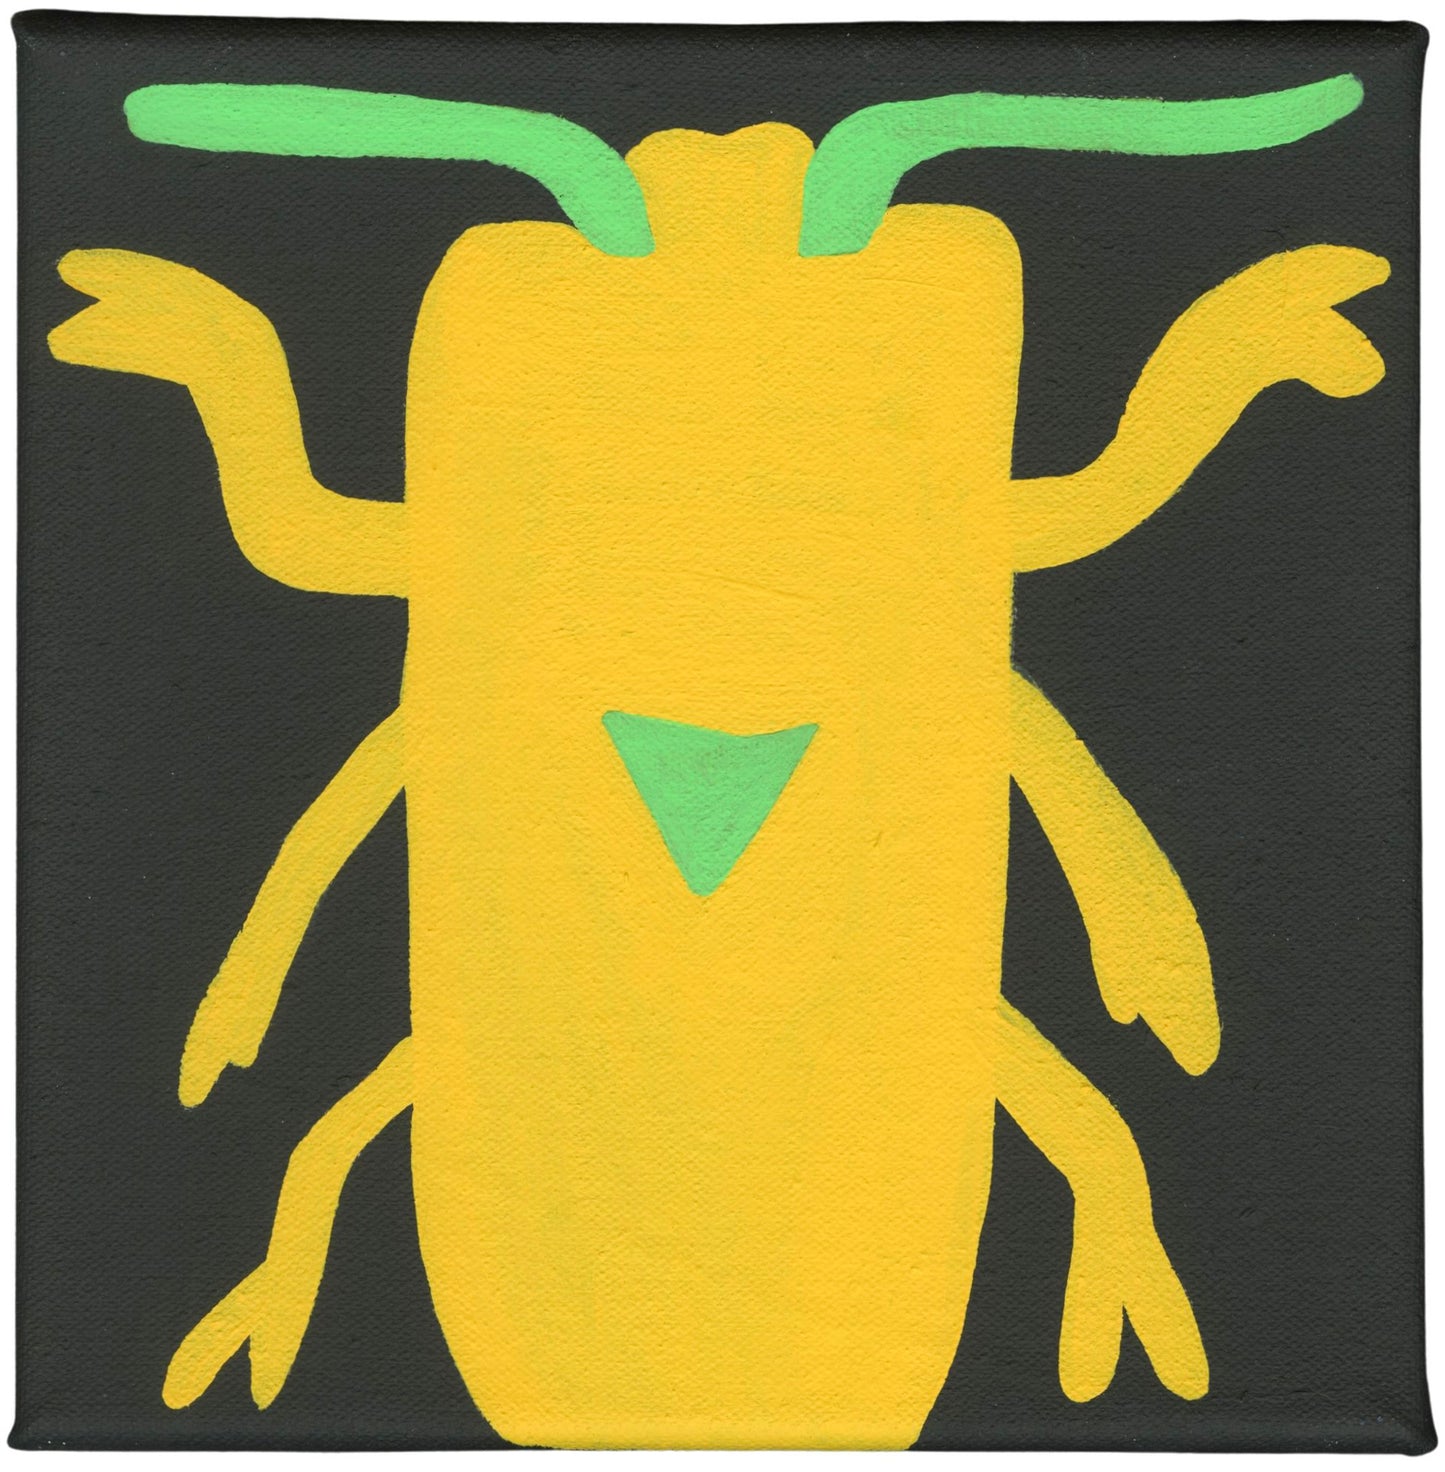 Snap Beetle (P0375)